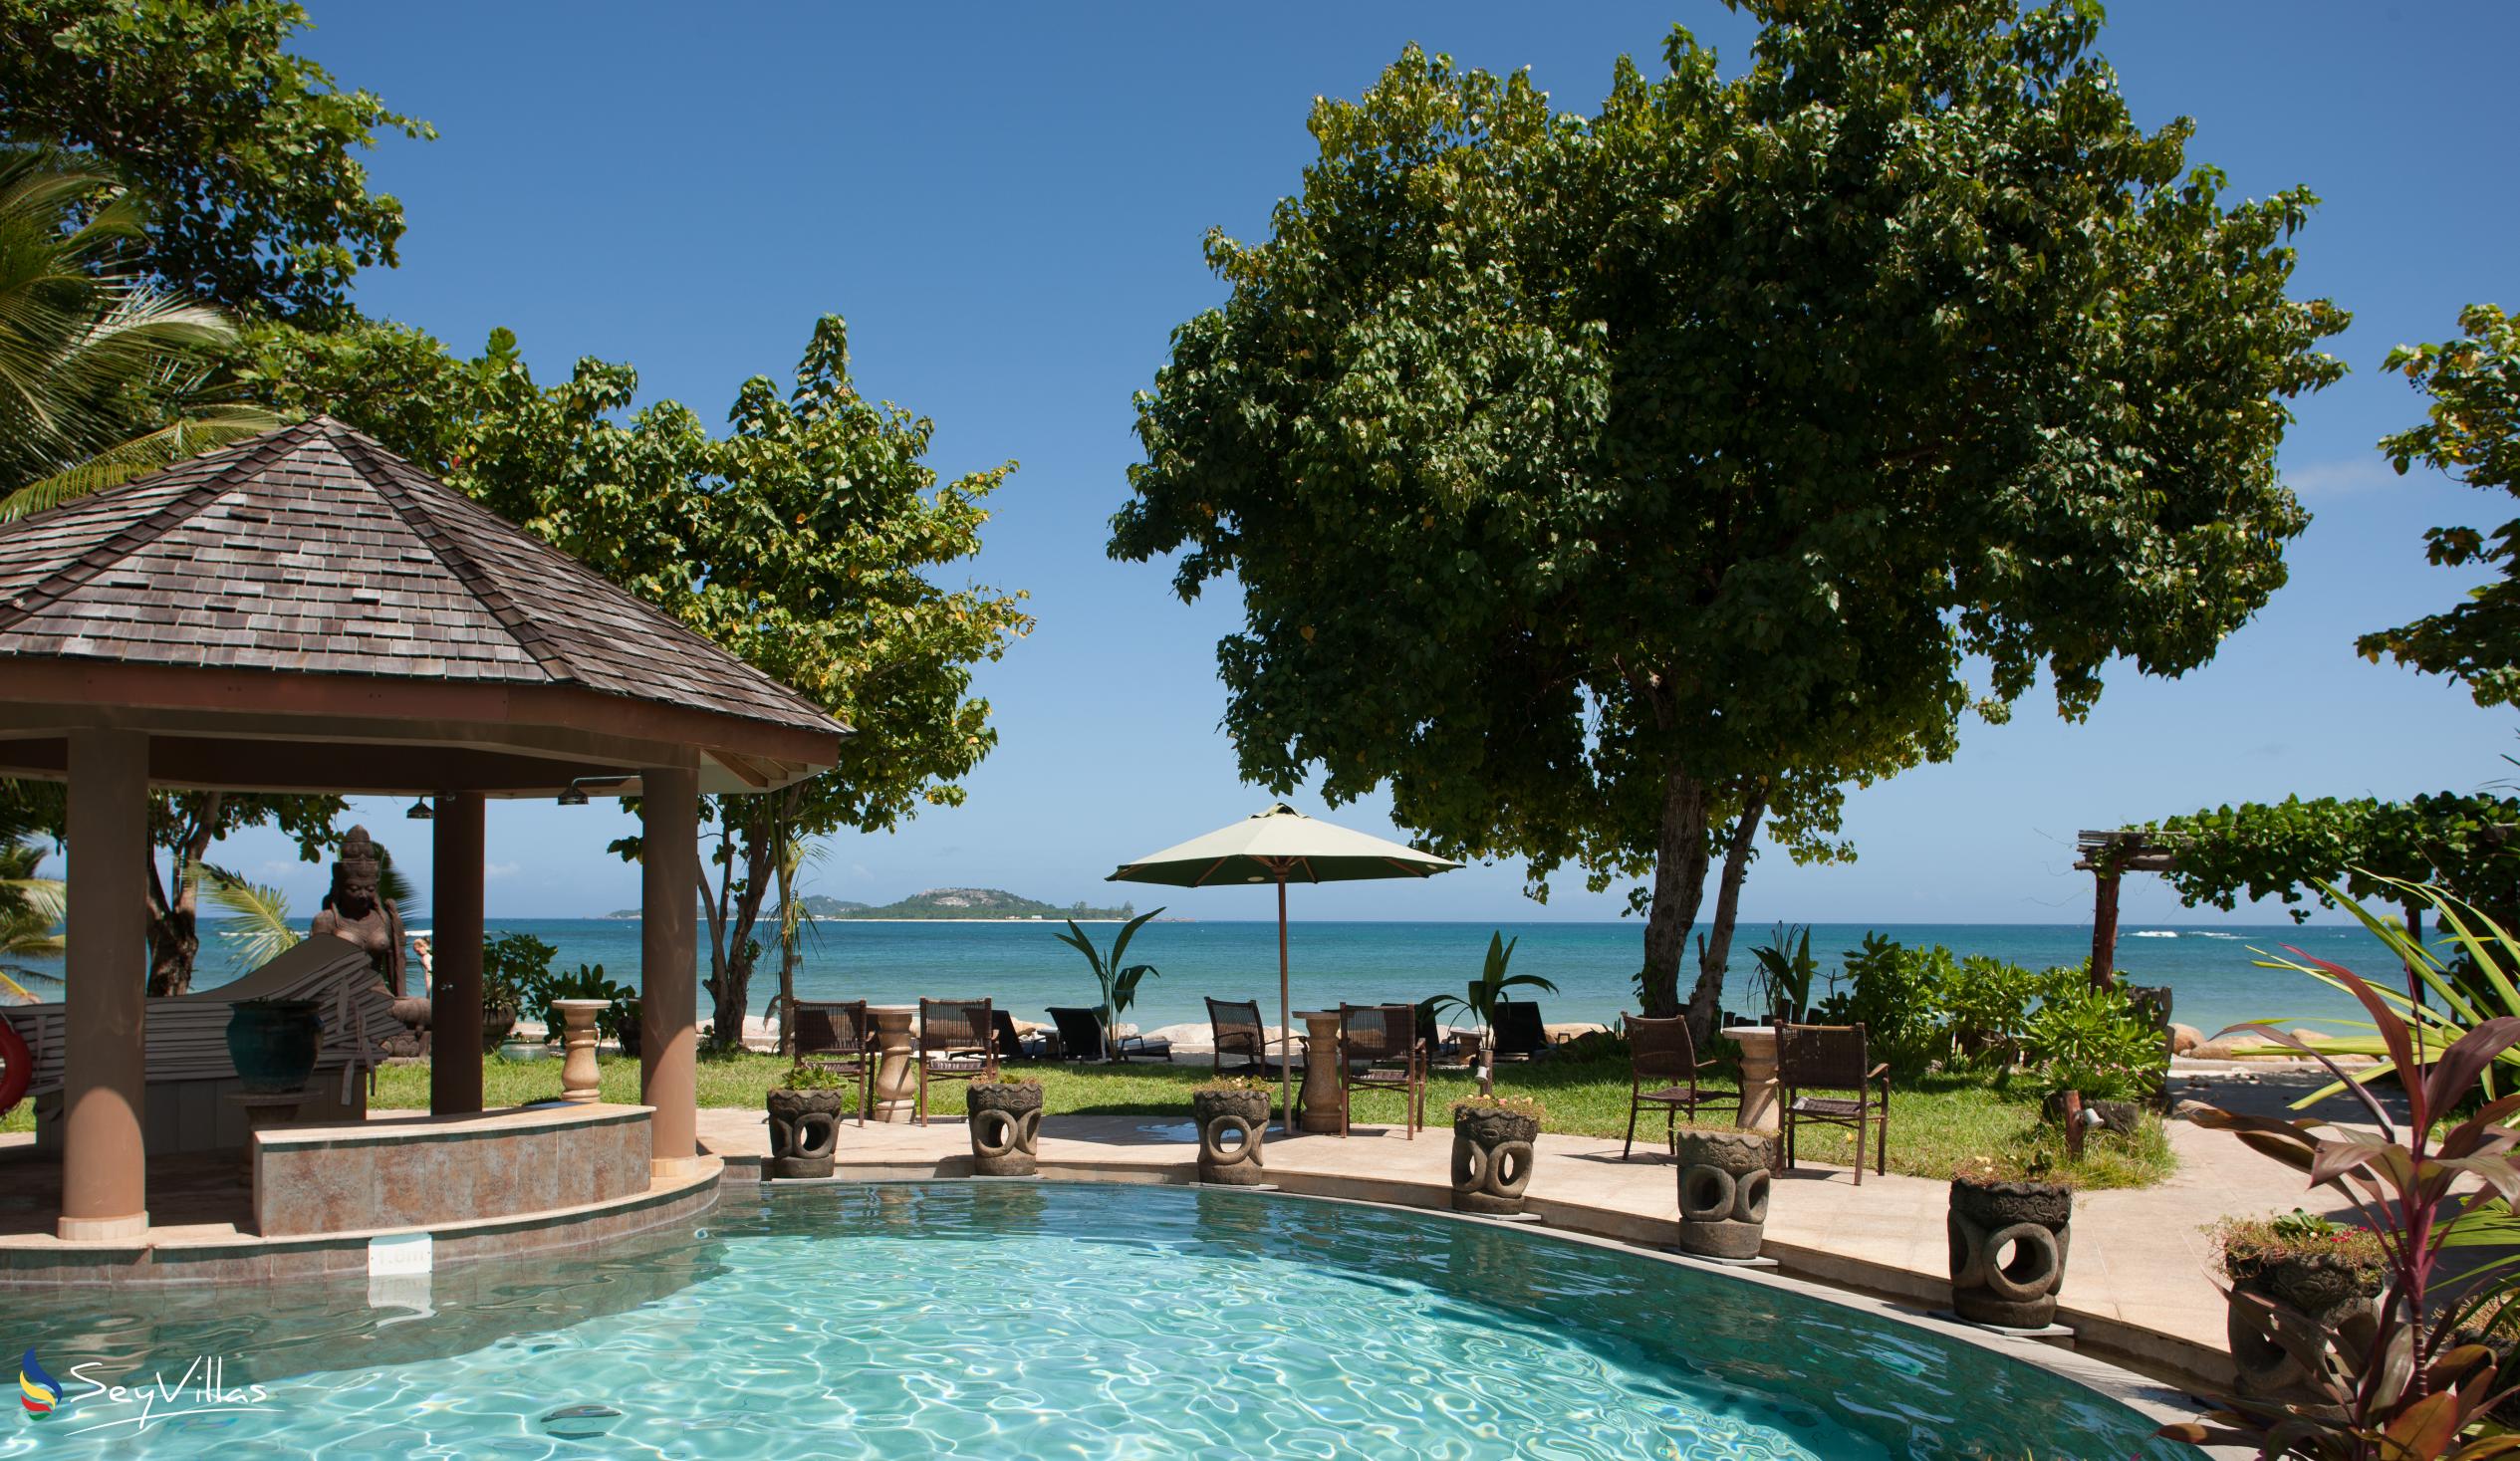 Foto 7: Castello Beach Hotel - Aussenbereich - Praslin (Seychellen)